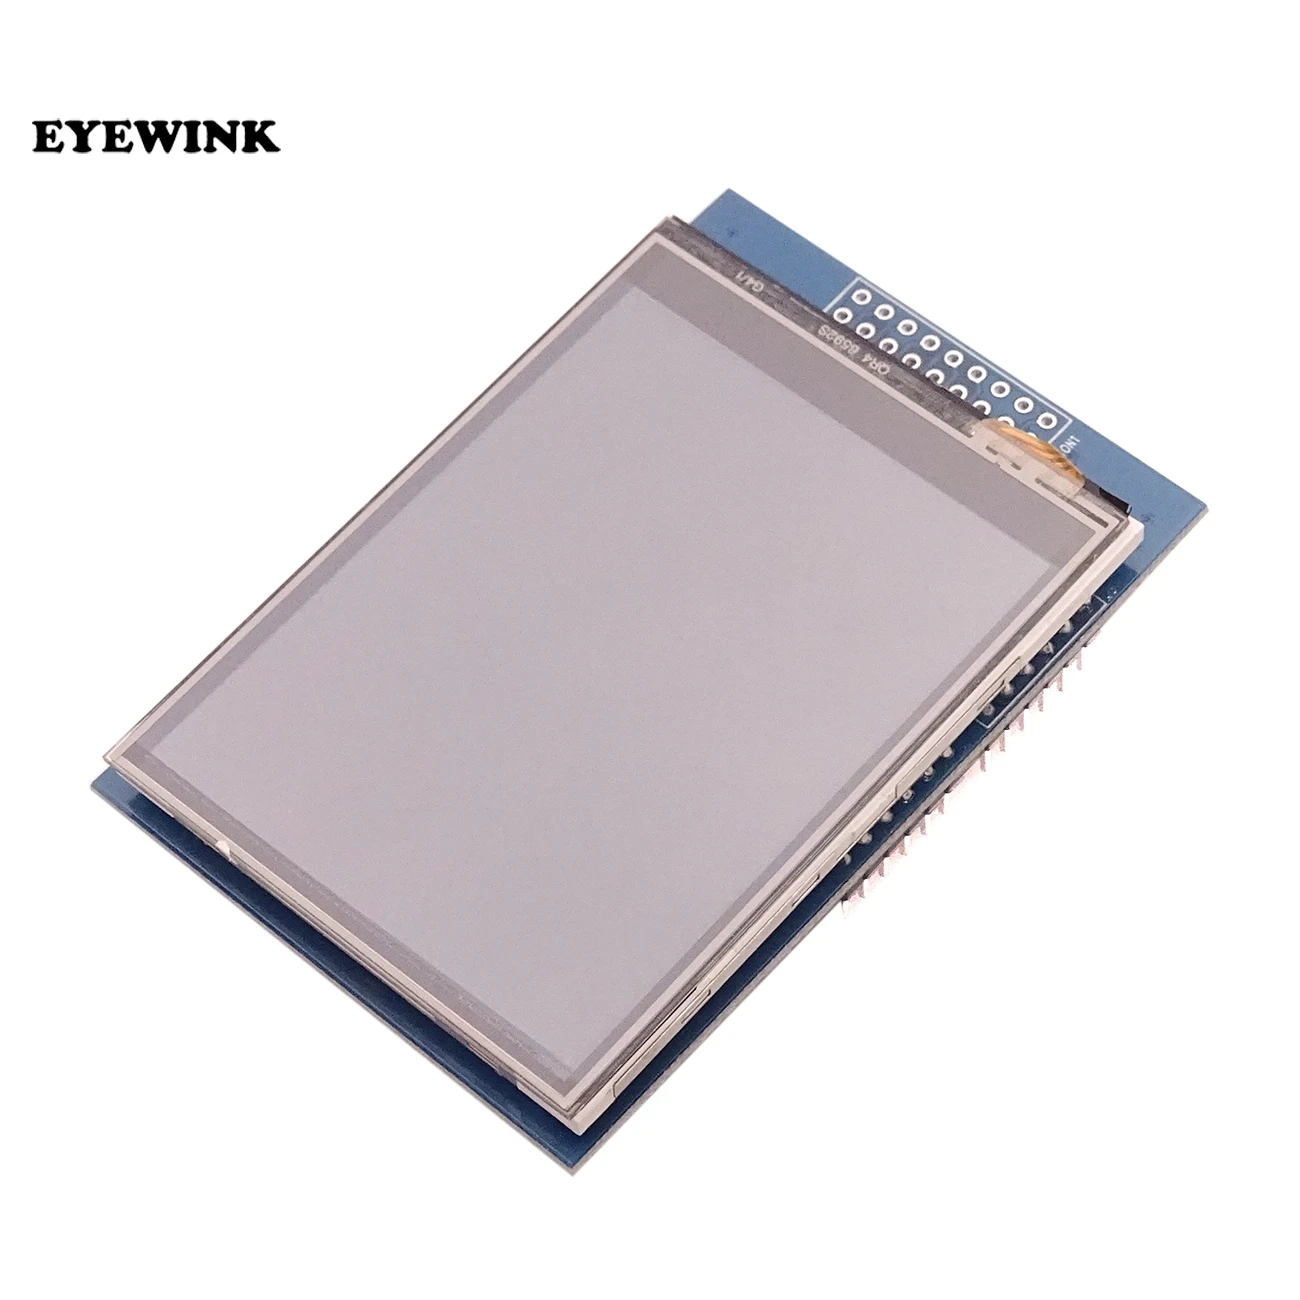 EYEWINK ЖК-дисплей модуль TFT 2,8 дюймов TFT ЖК-экран для arduino UNO R3 плата